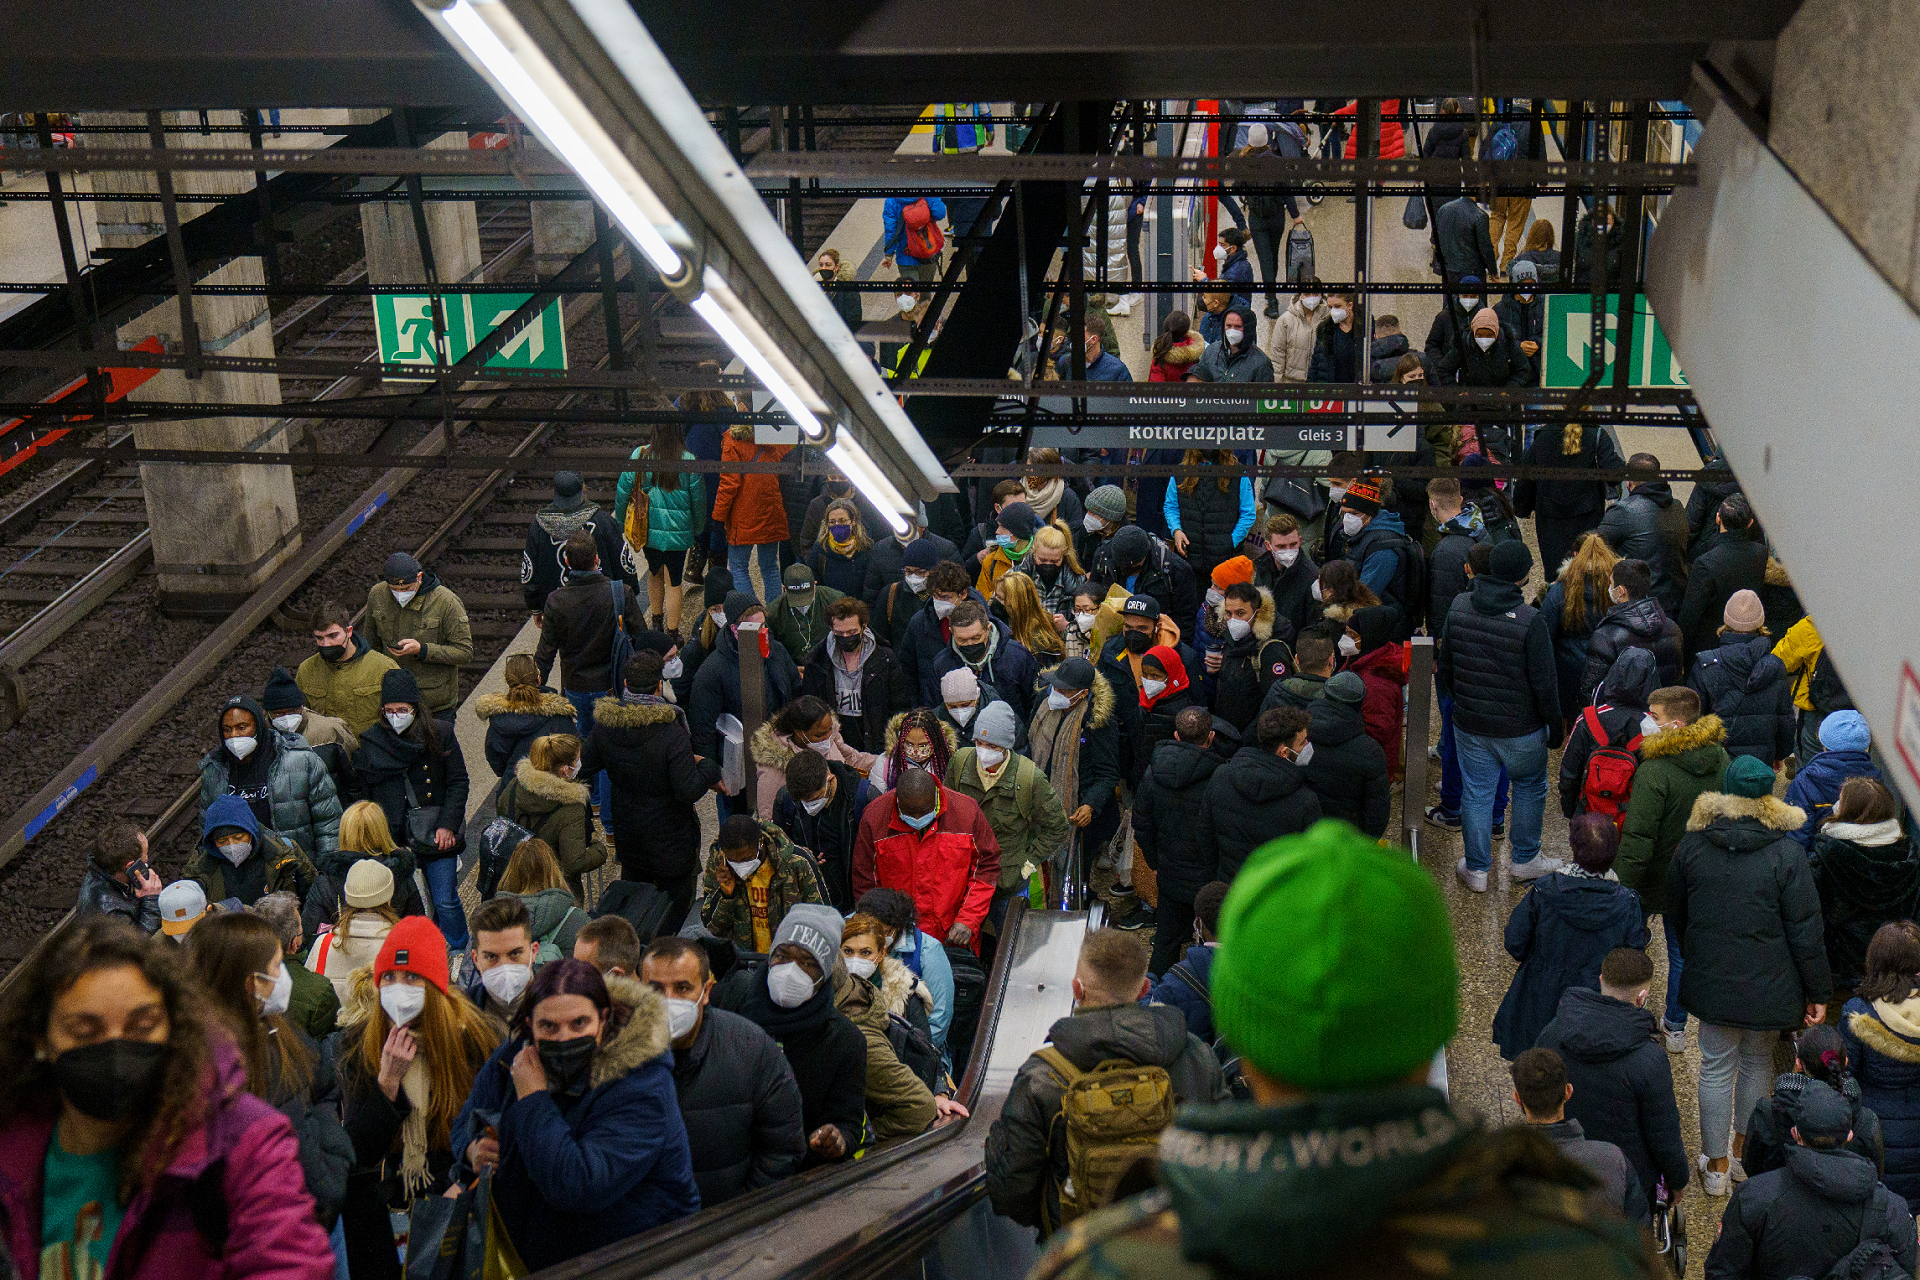 Die Menschenmengen am U-Bahnhof in München